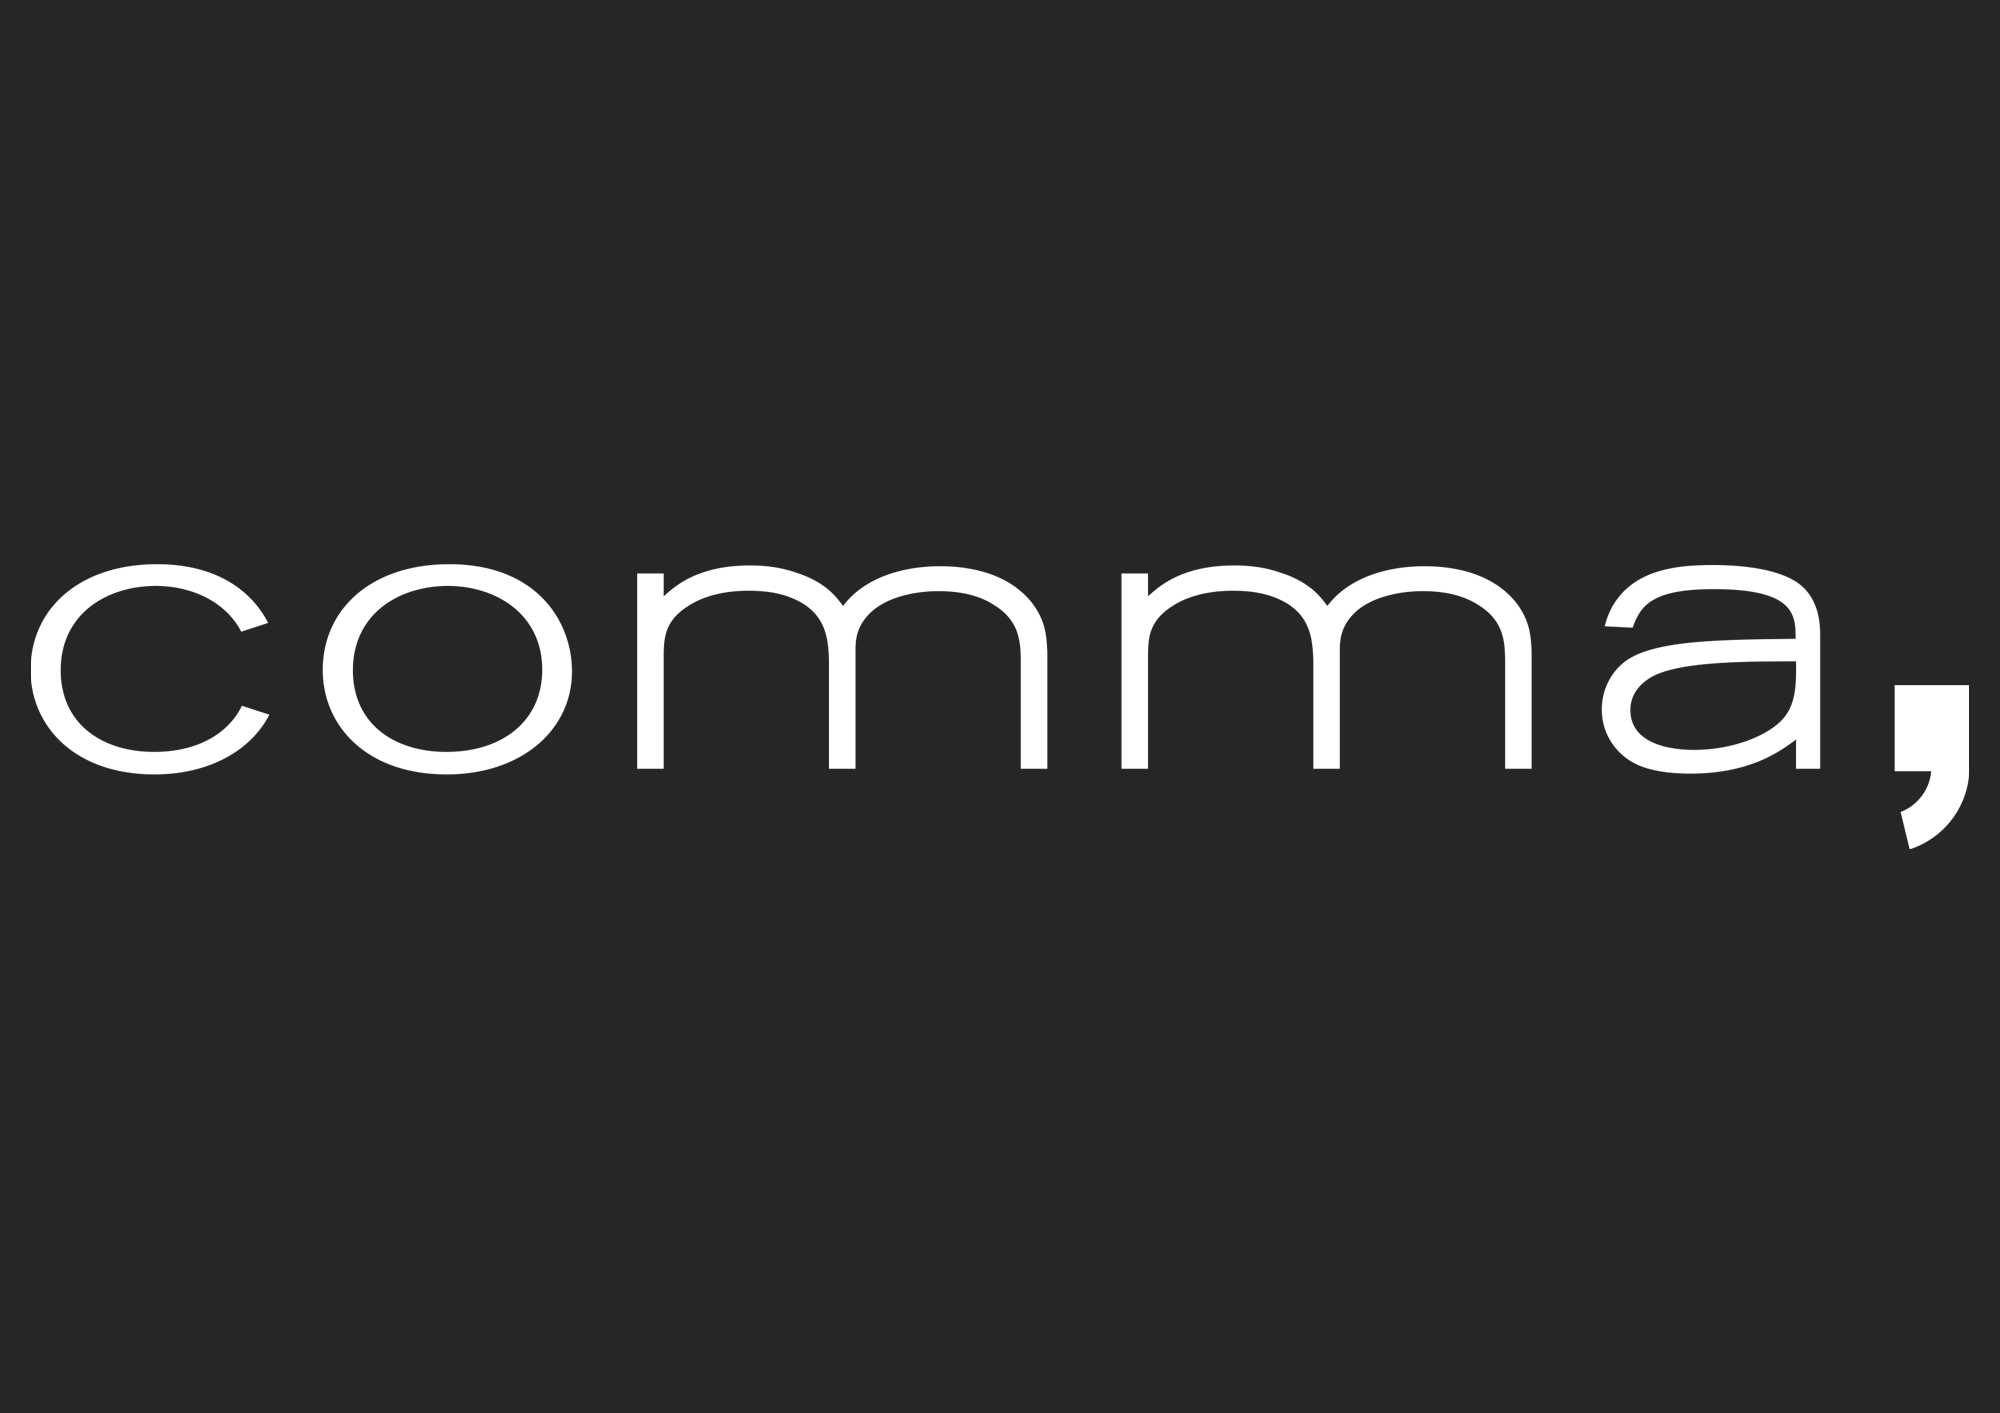 Logo comma